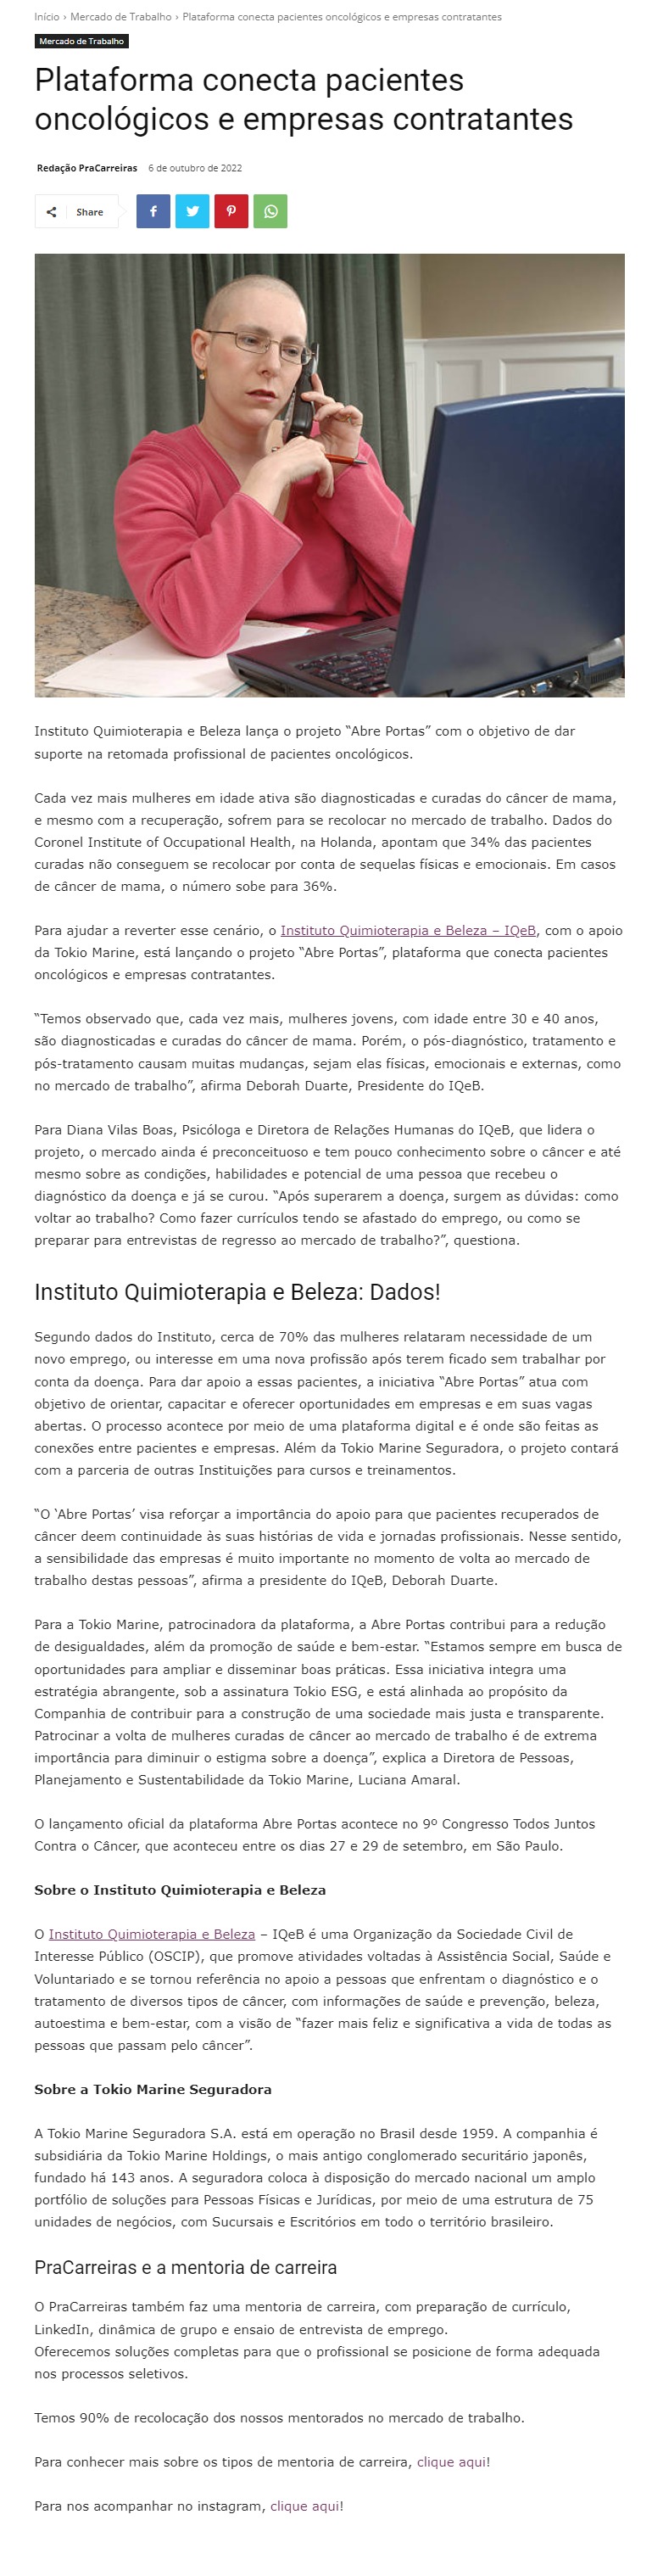 Instituto Quimioterapia e Beleza lança projeto 